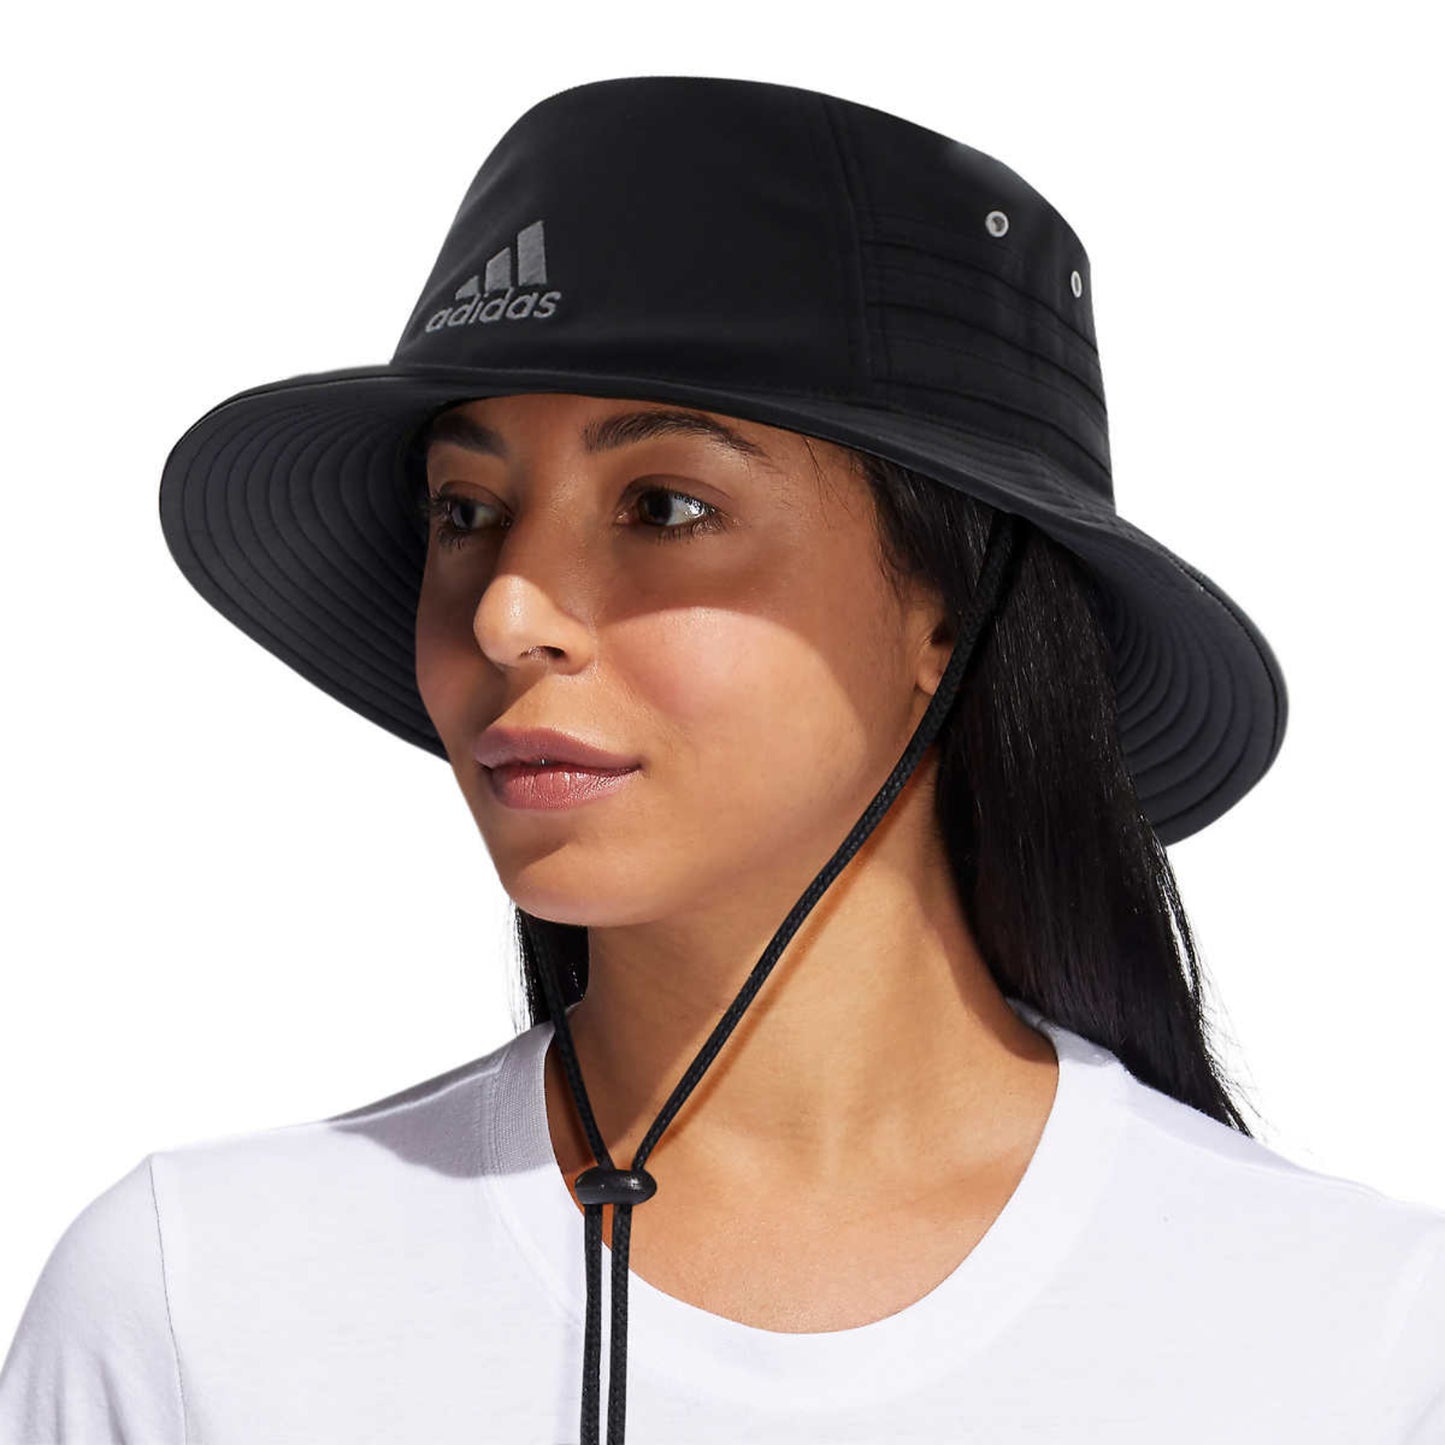 adidas Aeroready Unisex Men's Women's Bucket Sun Hat Lightweight Moisture Wicking UPF 50 Adjustable Strap